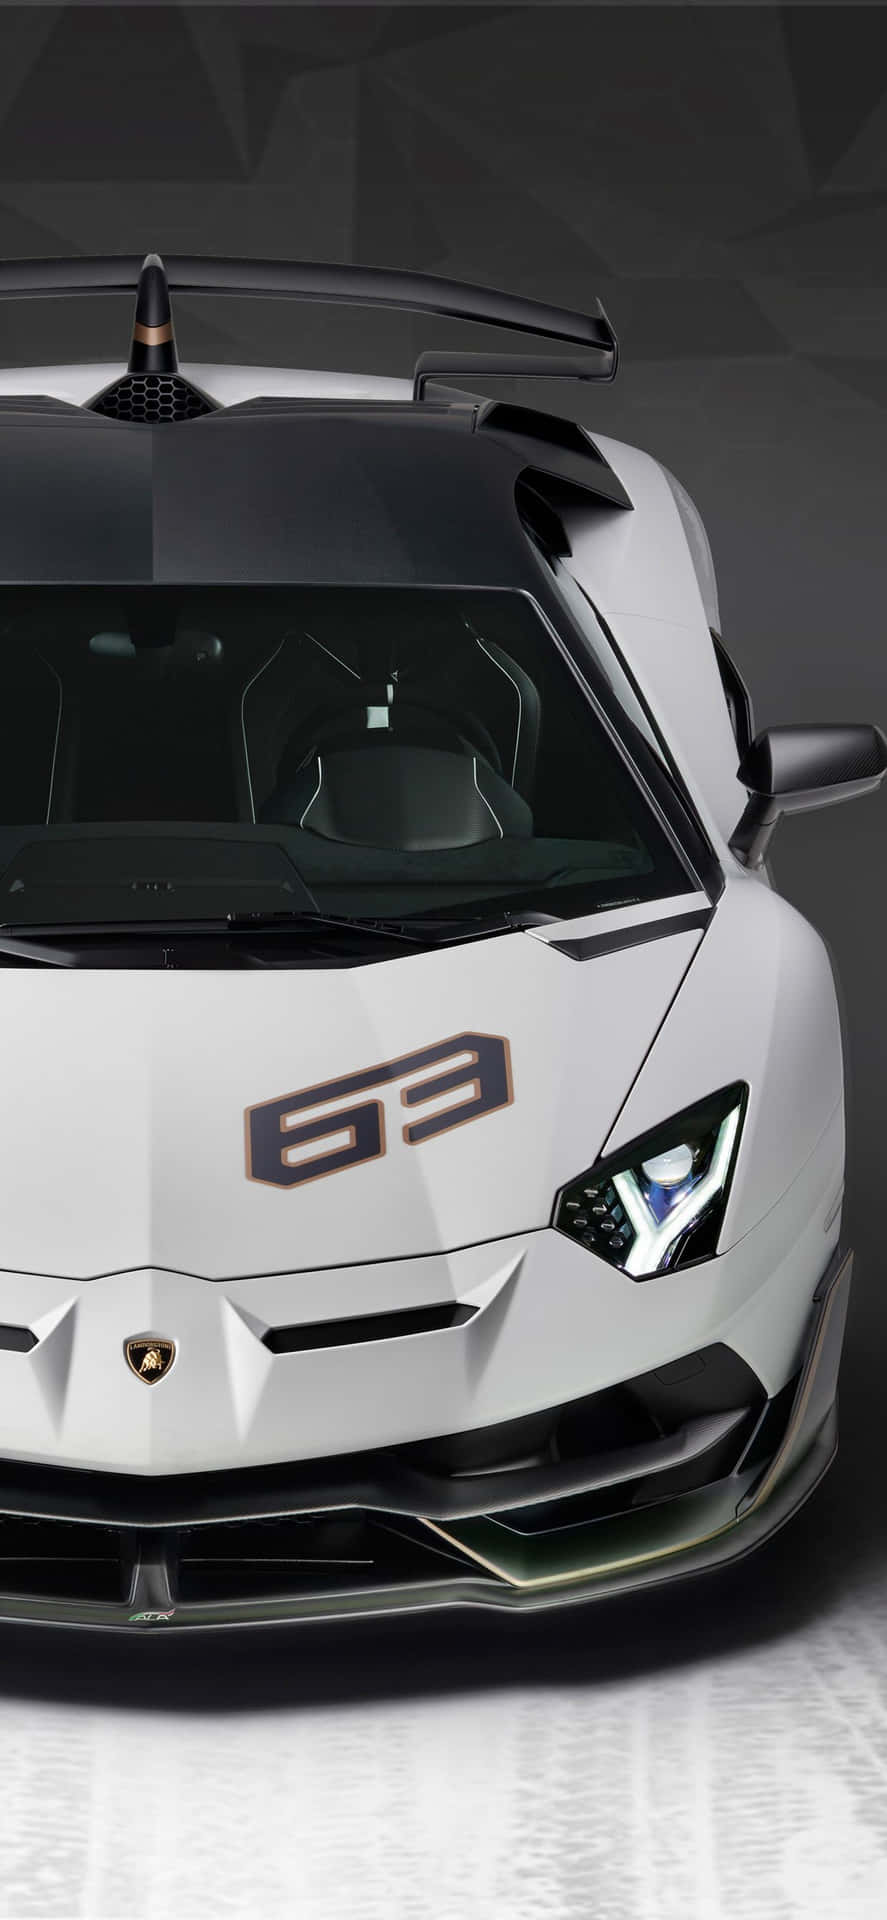 White Sports Car Lamborghini Phone Wallpaper